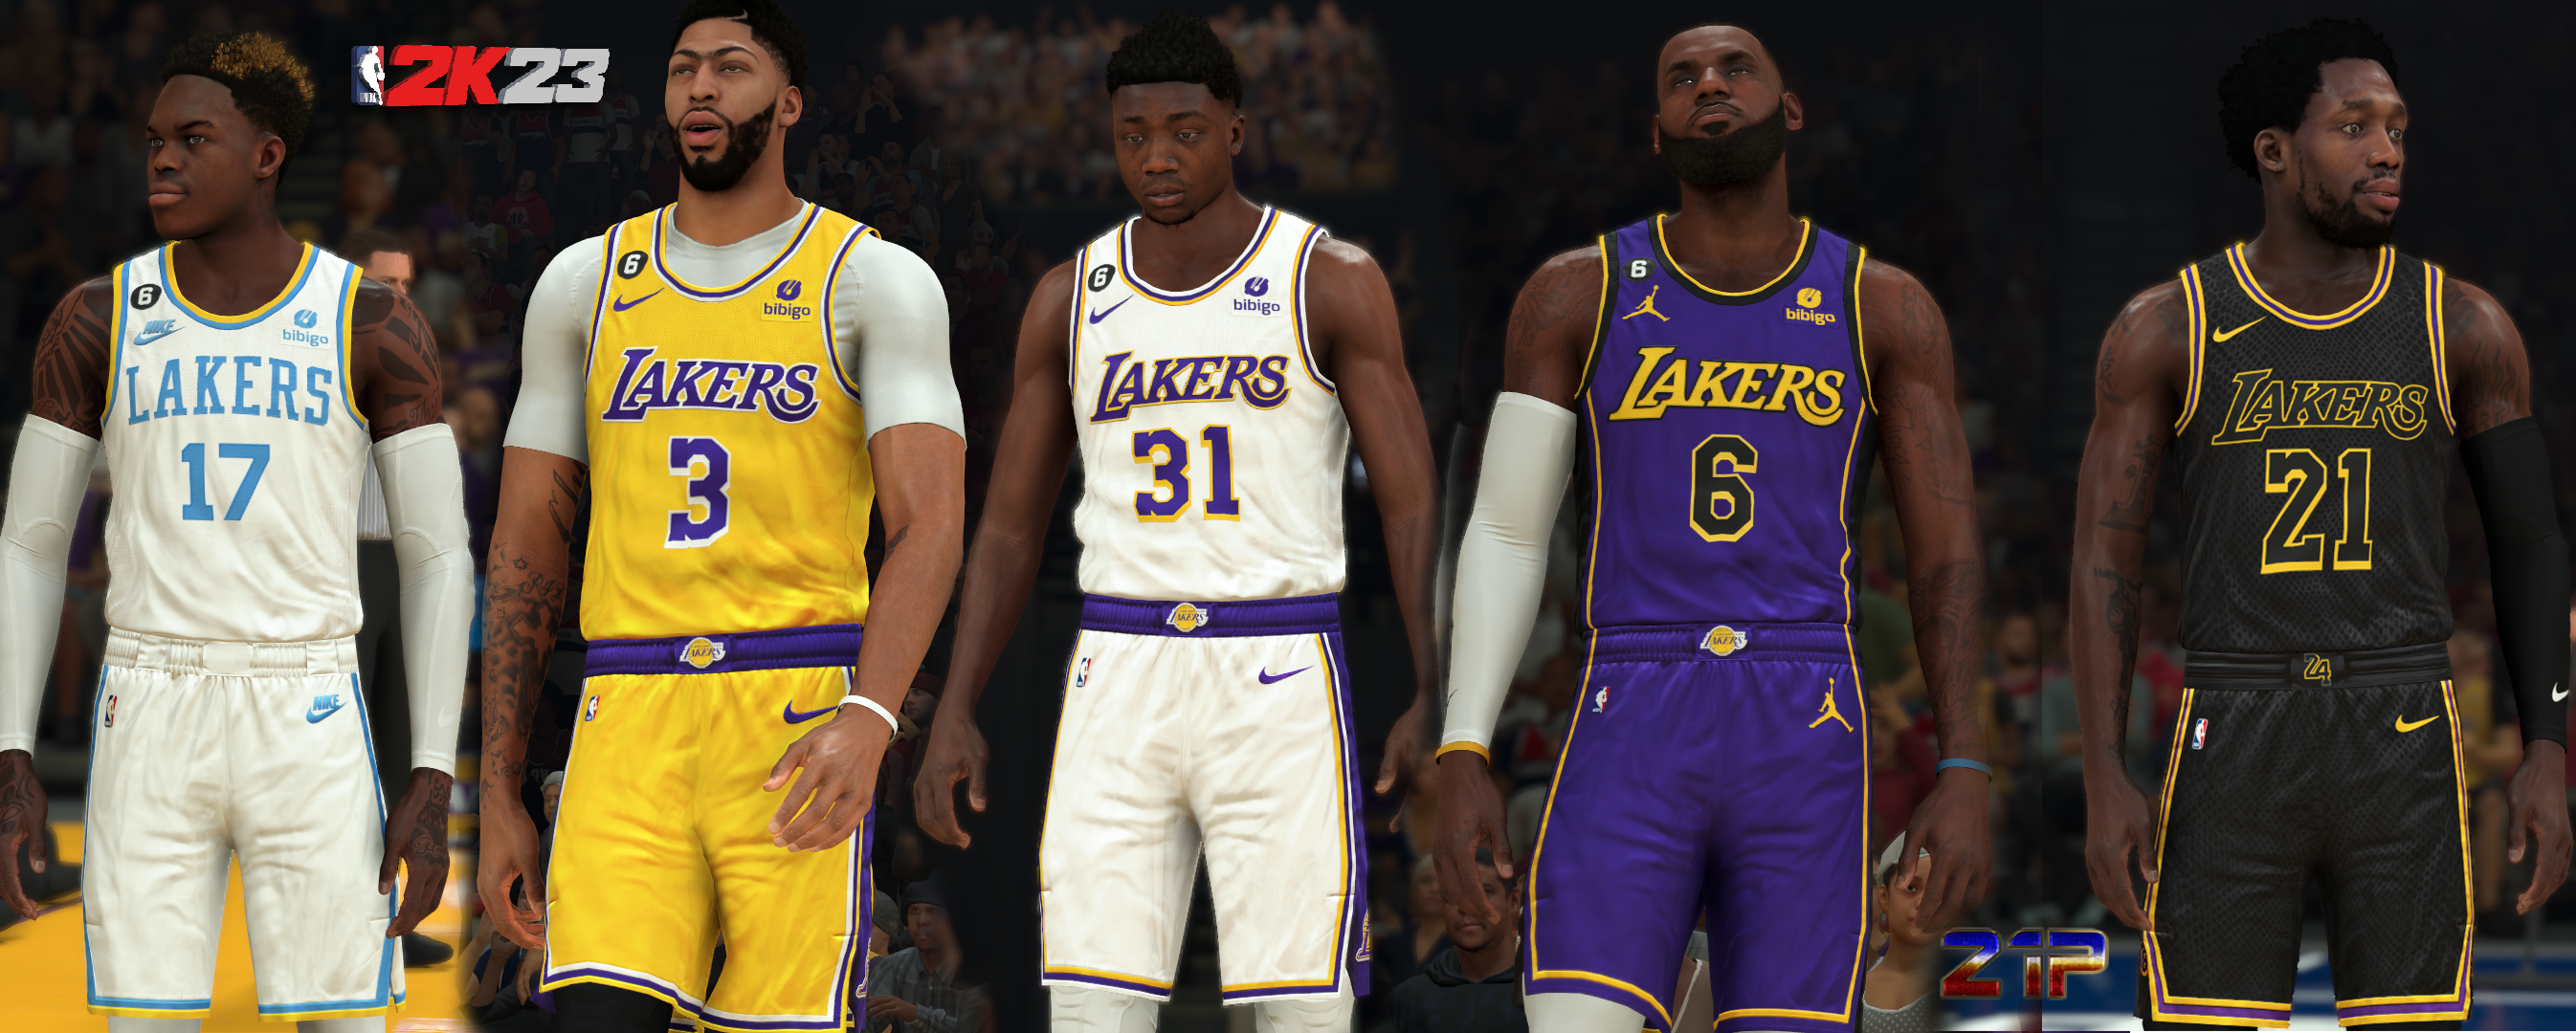 NLSC Forum • Downloads - 1990s Los Angeles Lakers Uniforms